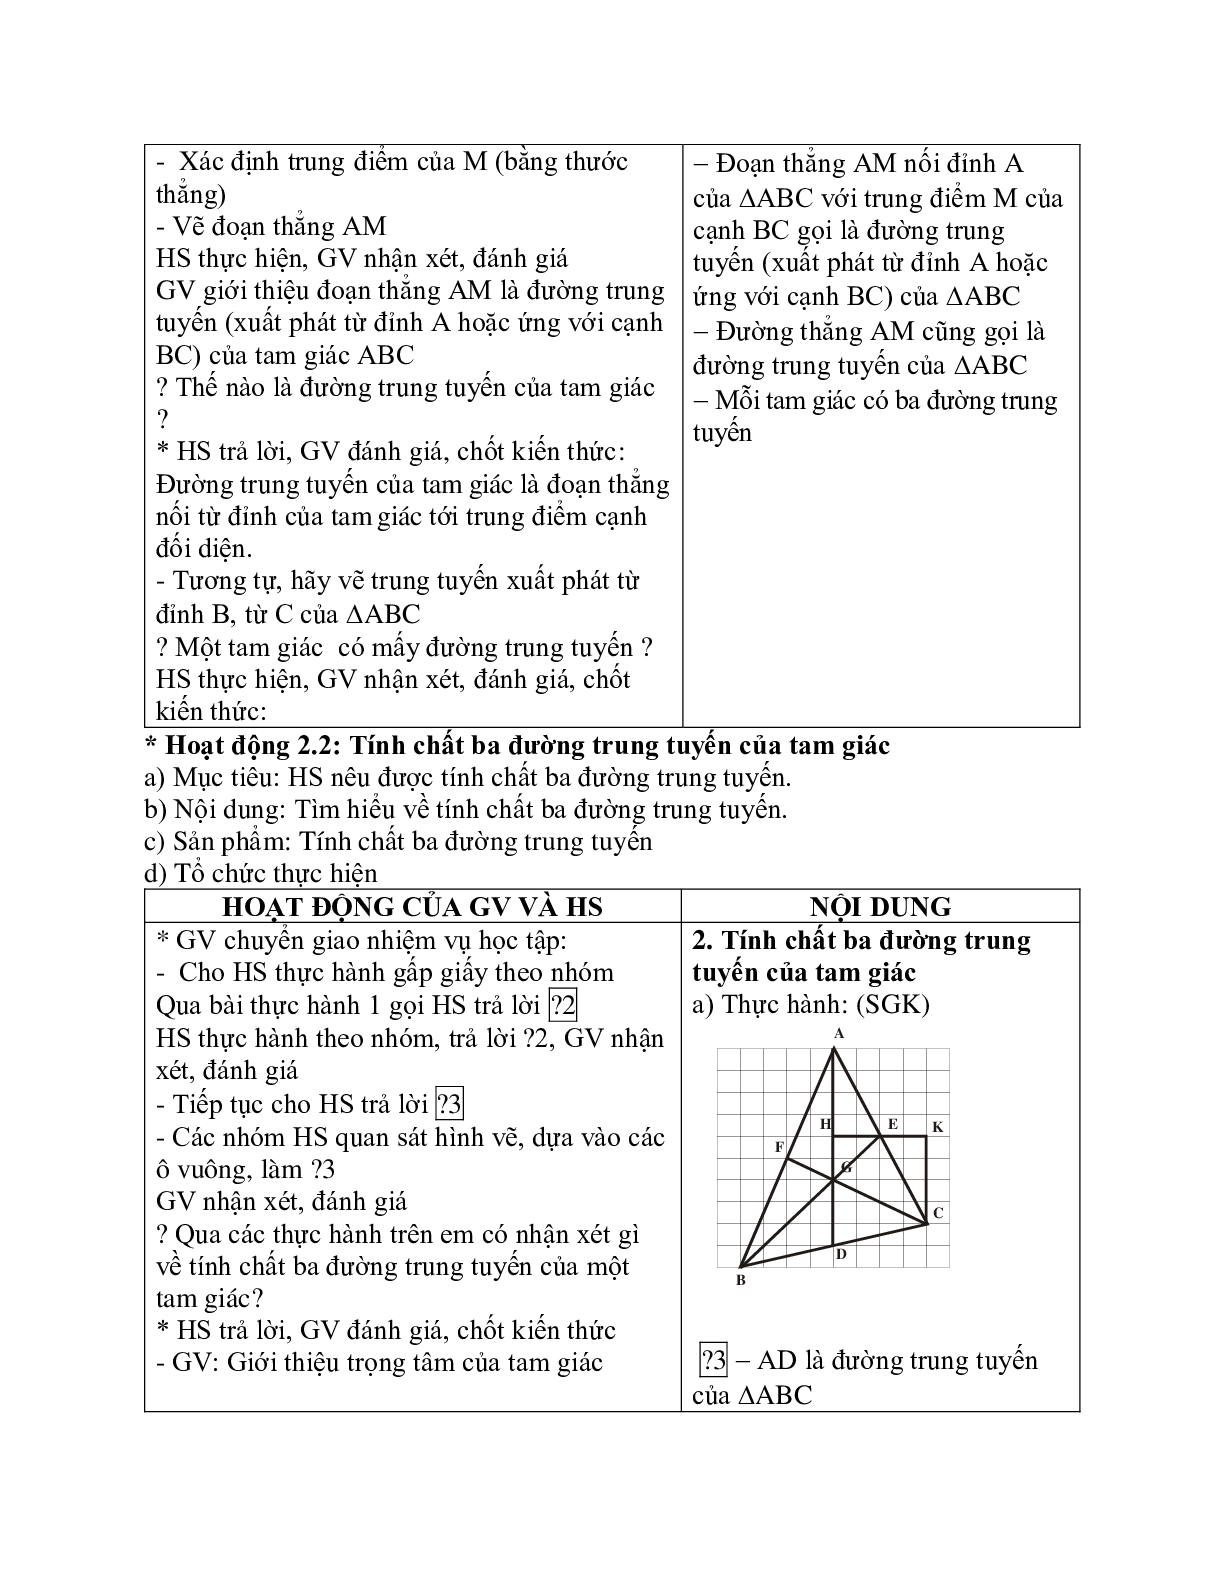 Giáo án Toán học 7 bài 4: Tính chất ba đường trung tuyến của tam giác chuẩn nhất (trang 2)